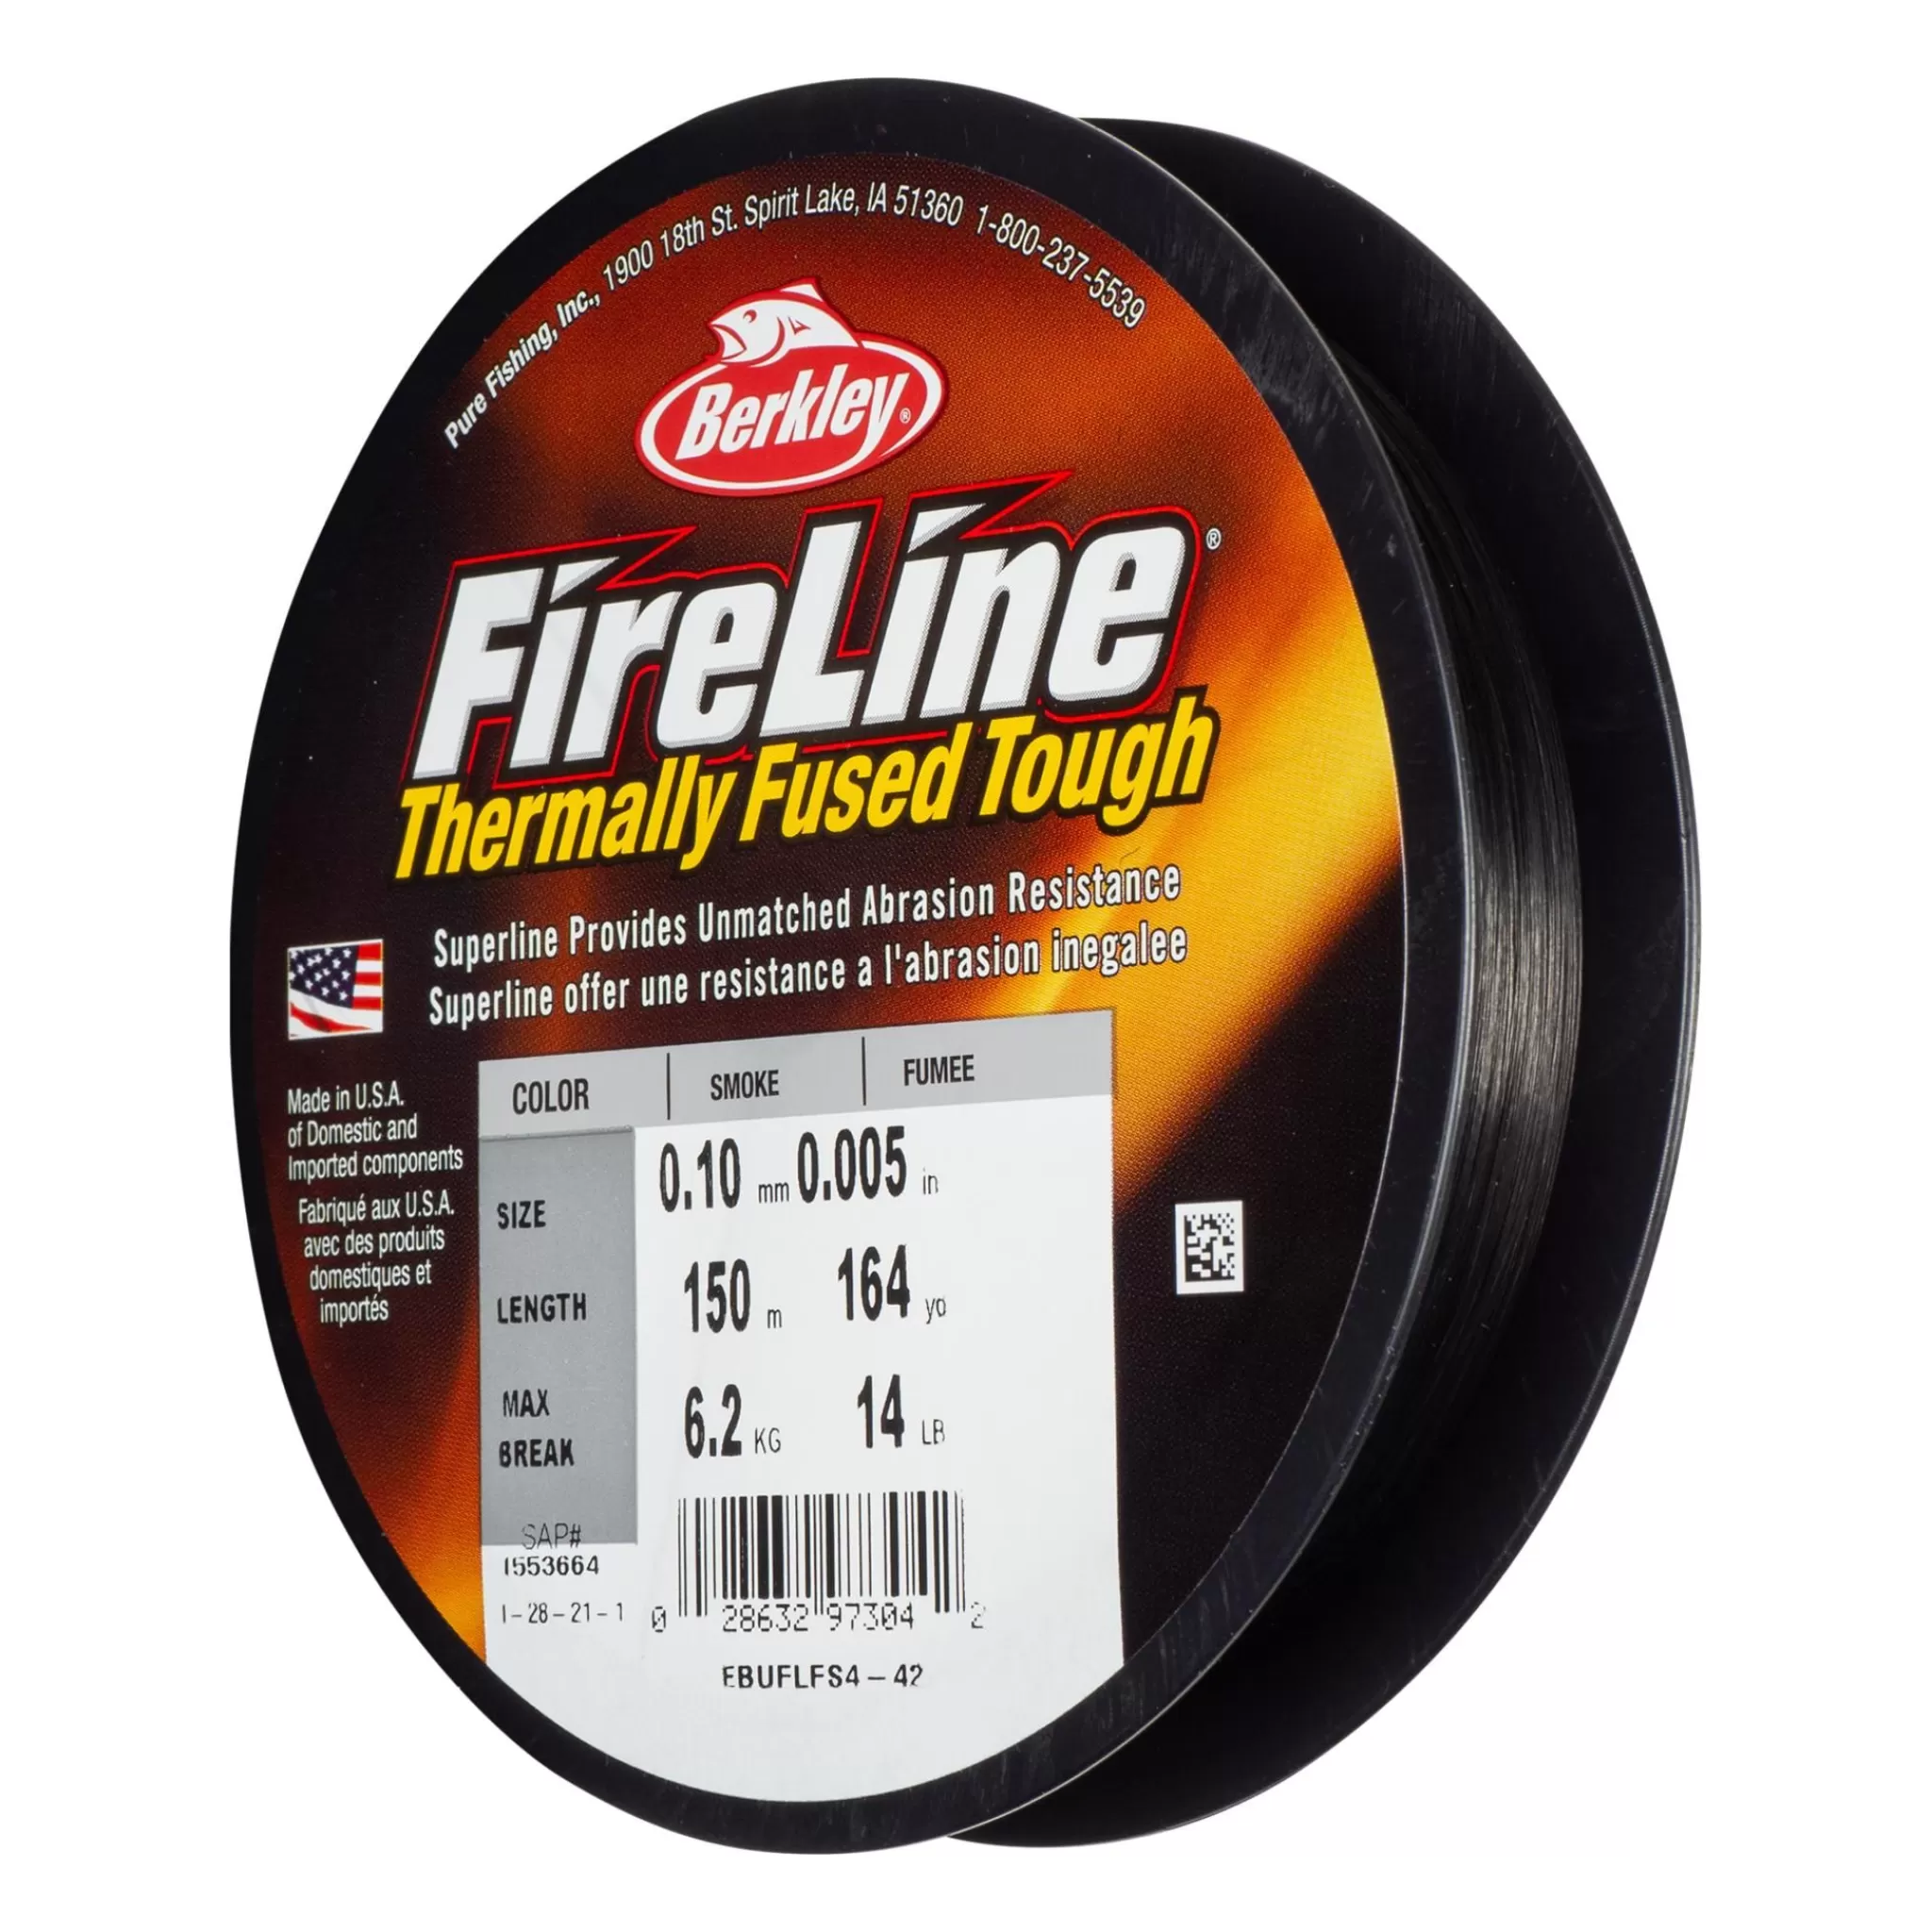 Online berkley Fireline 150M Smoke, Multifilament